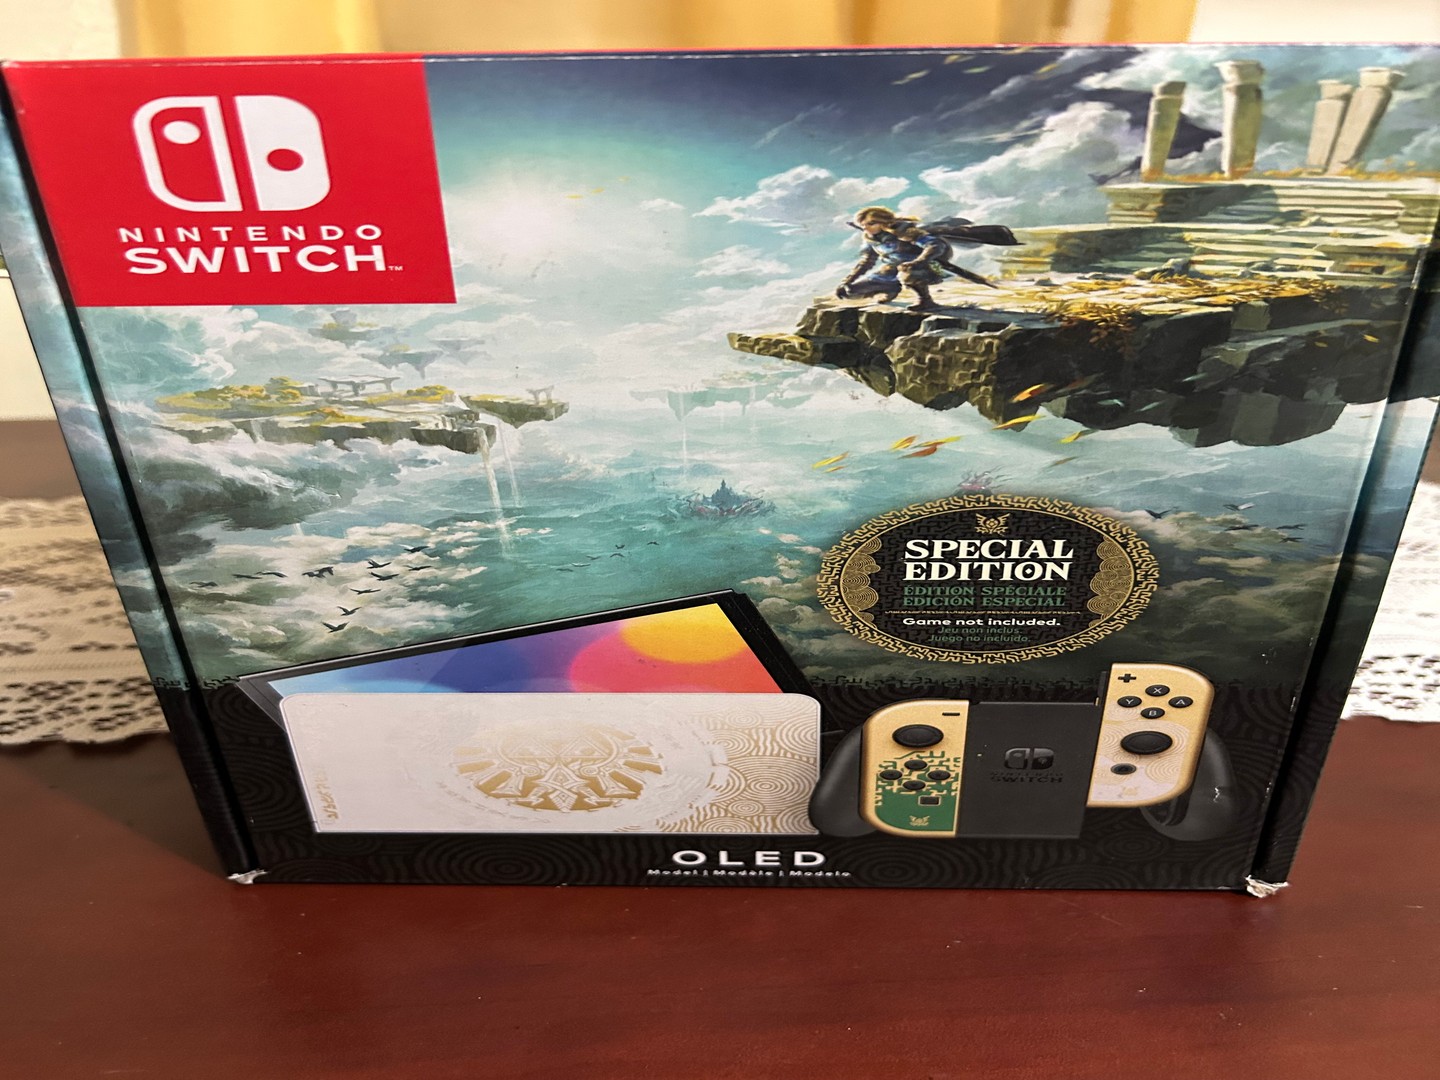 consolas y videojuegos - Nintendo Switch Oled Edicion Zelda como nueva  0